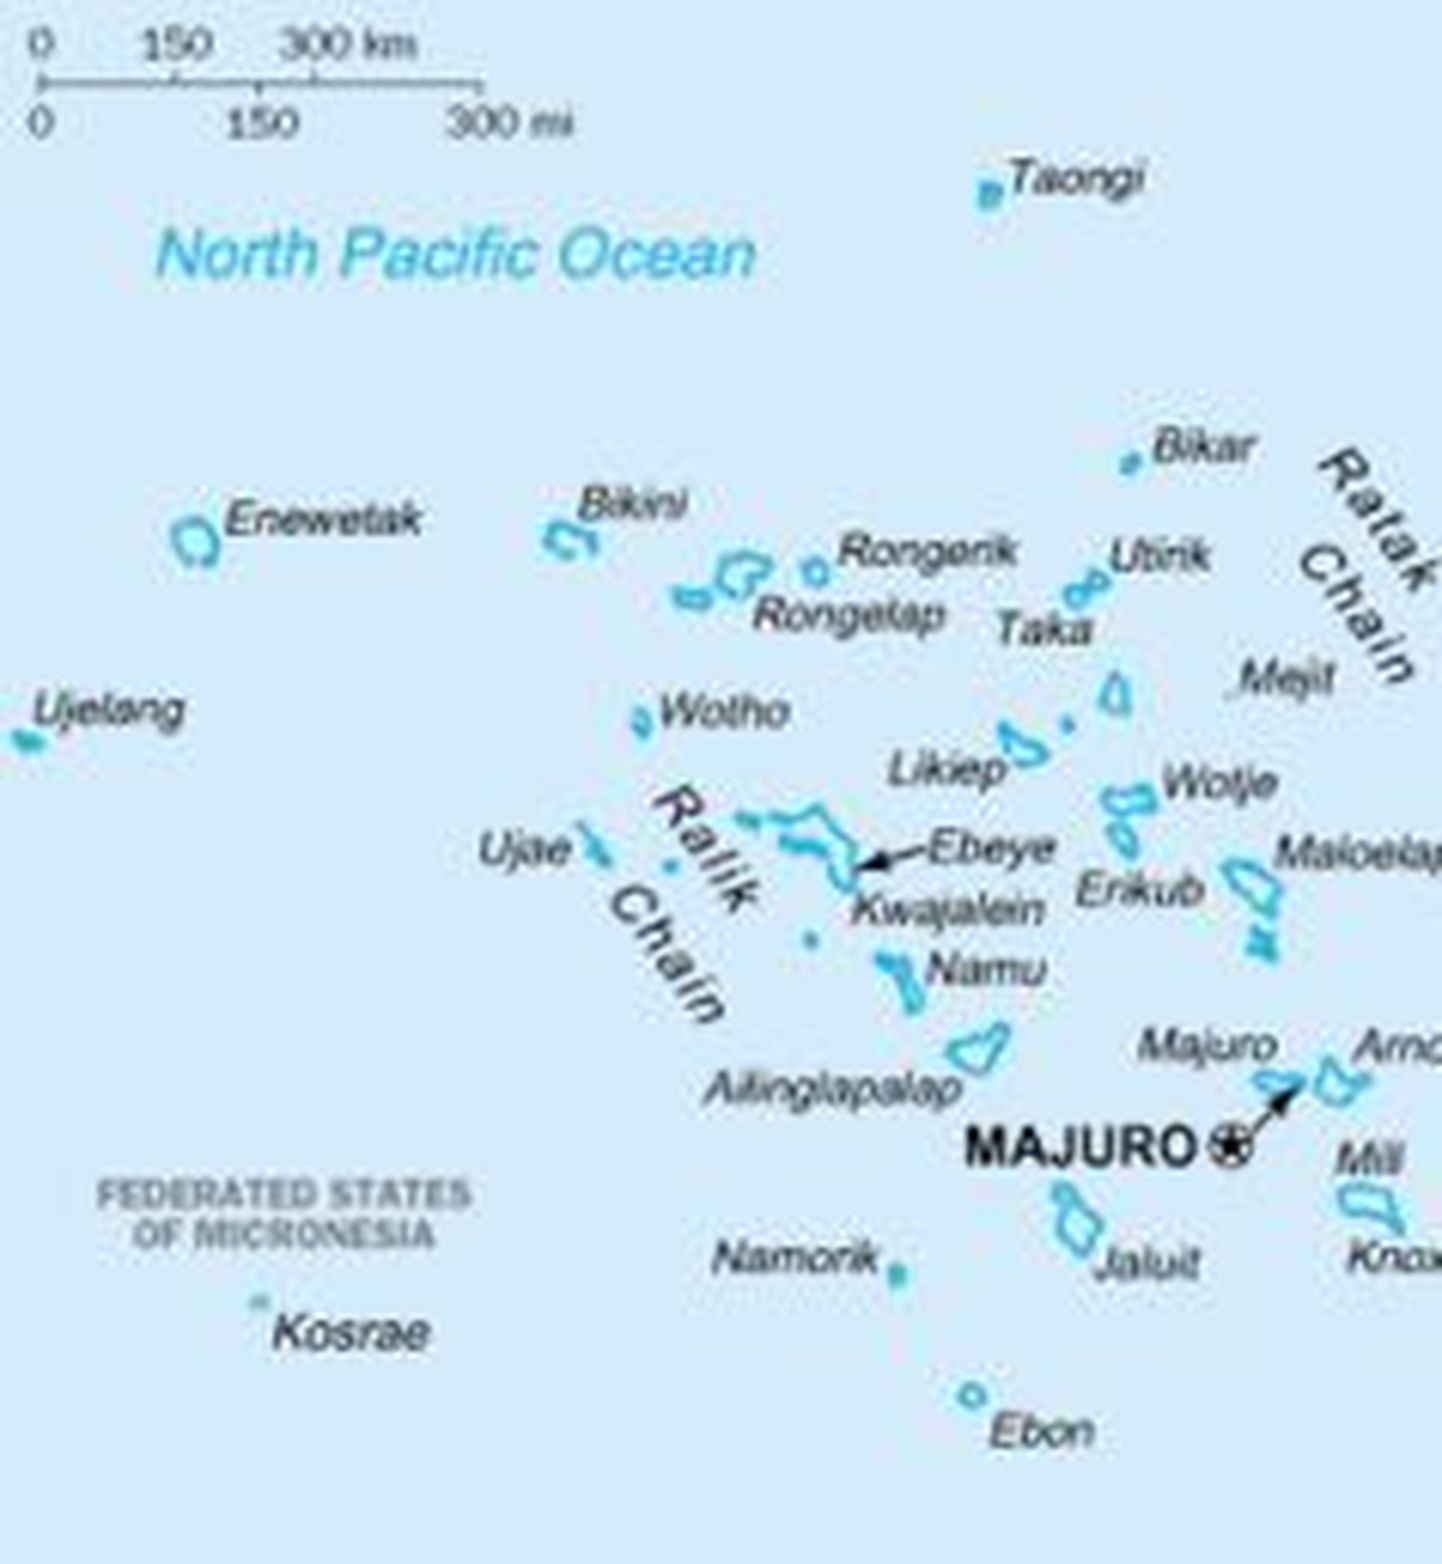 Bikini atoll pürgib maailmapärandi nimekirja. Kaardil Marshalli saared, mille hulka kuulub ka Bikini atoll